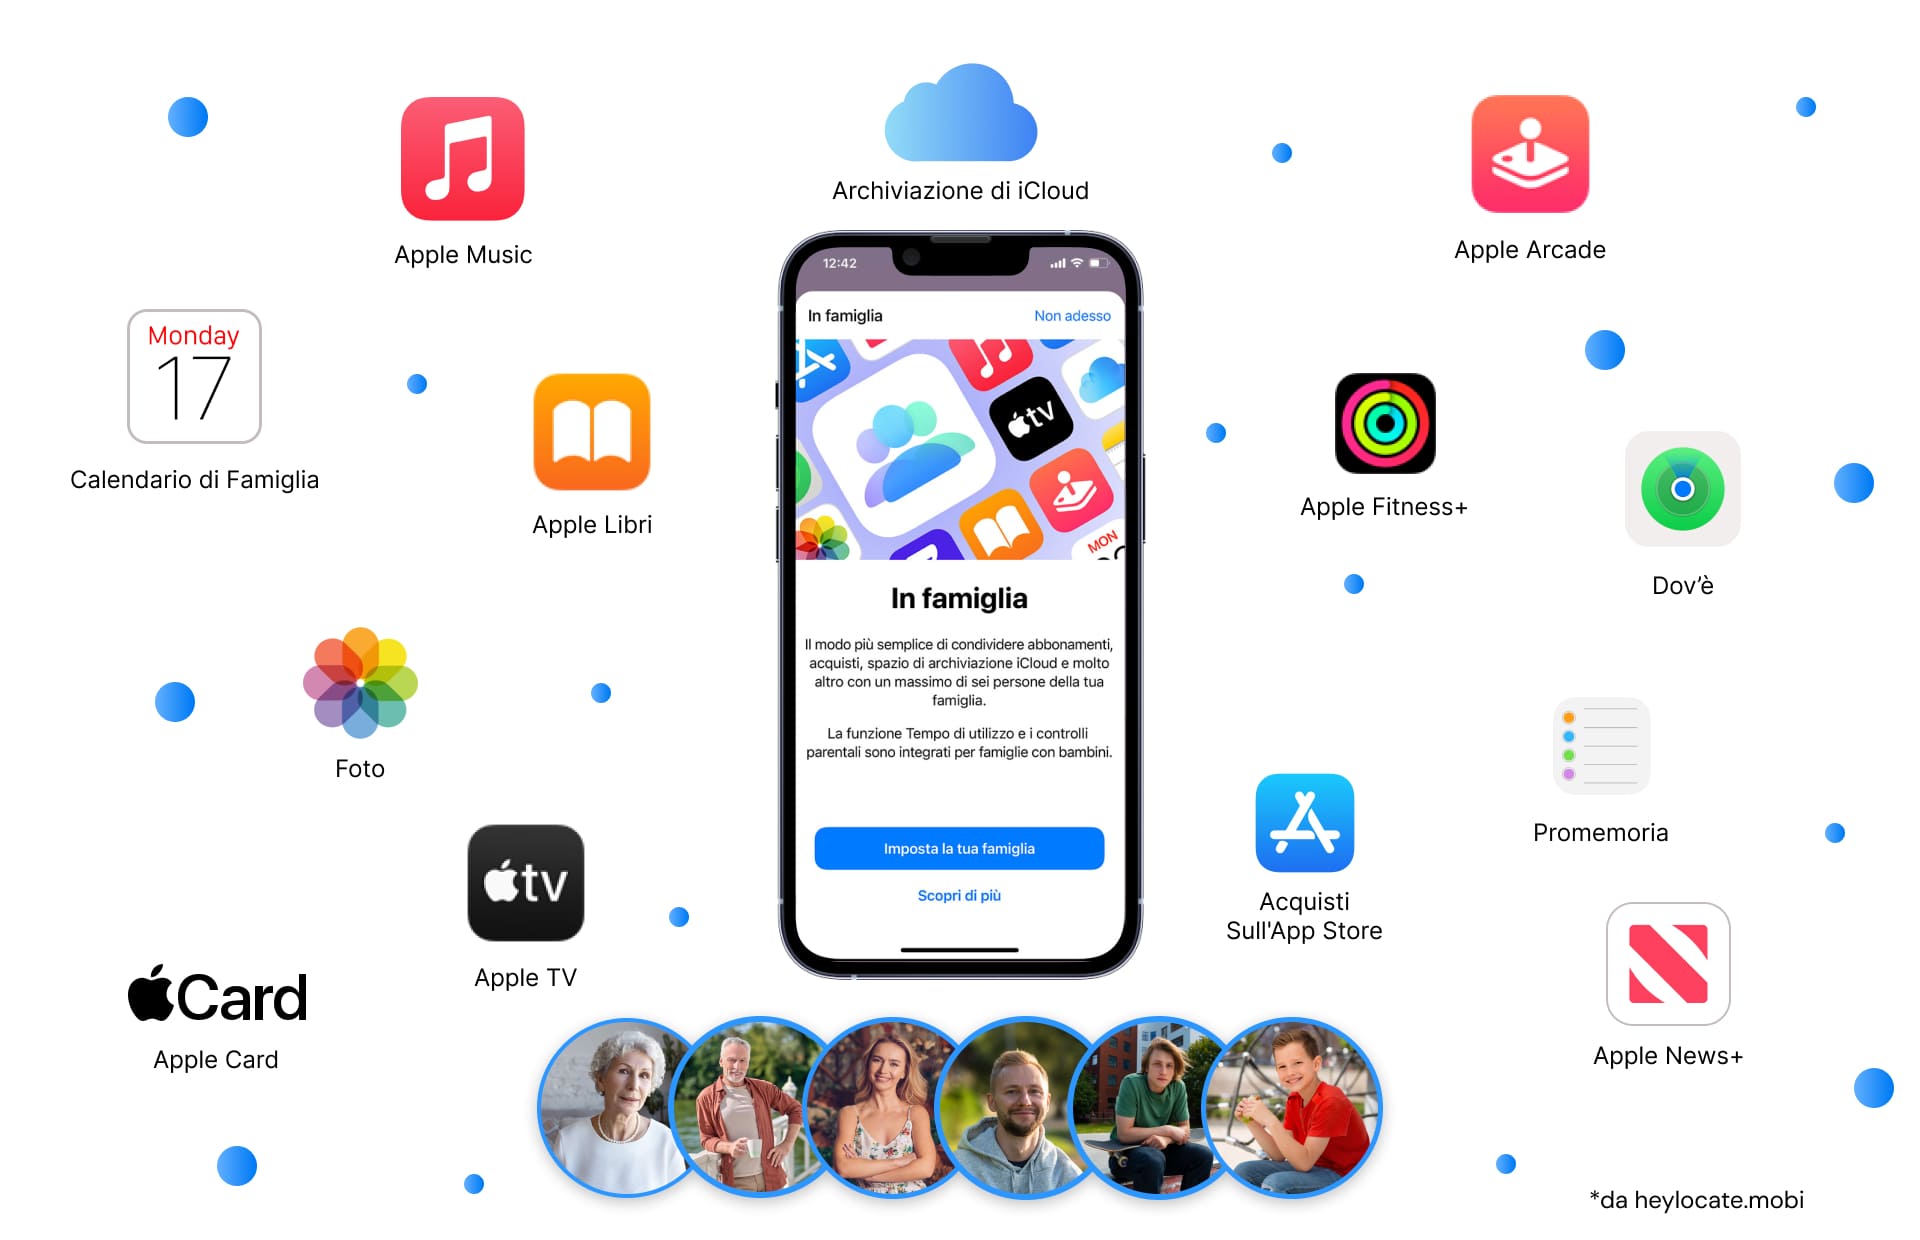 Un'immagine che mostra uno schermo di iPhone con la notifica di configurazione della Condivisione in Famiglia, circondata da icone di vari servizi Apple come Apple Music, Apple Books, iCloud e altri